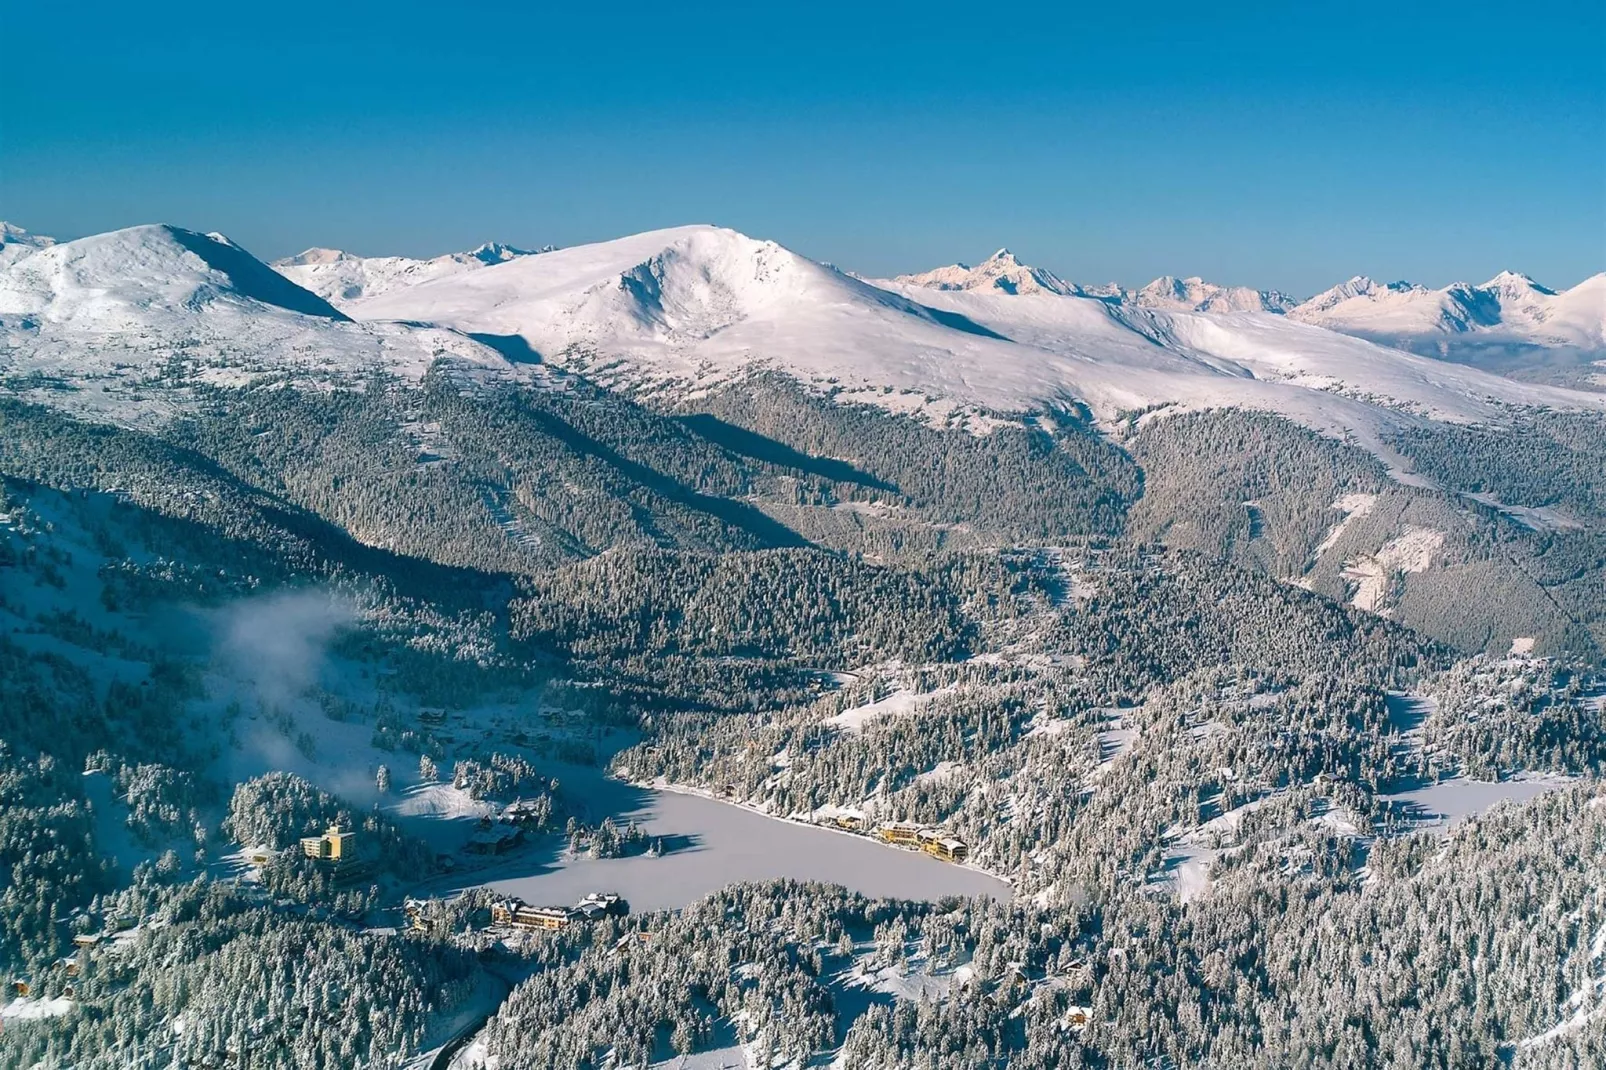 Alpenpark Turrach Chalets 2-Gebied winter 20km